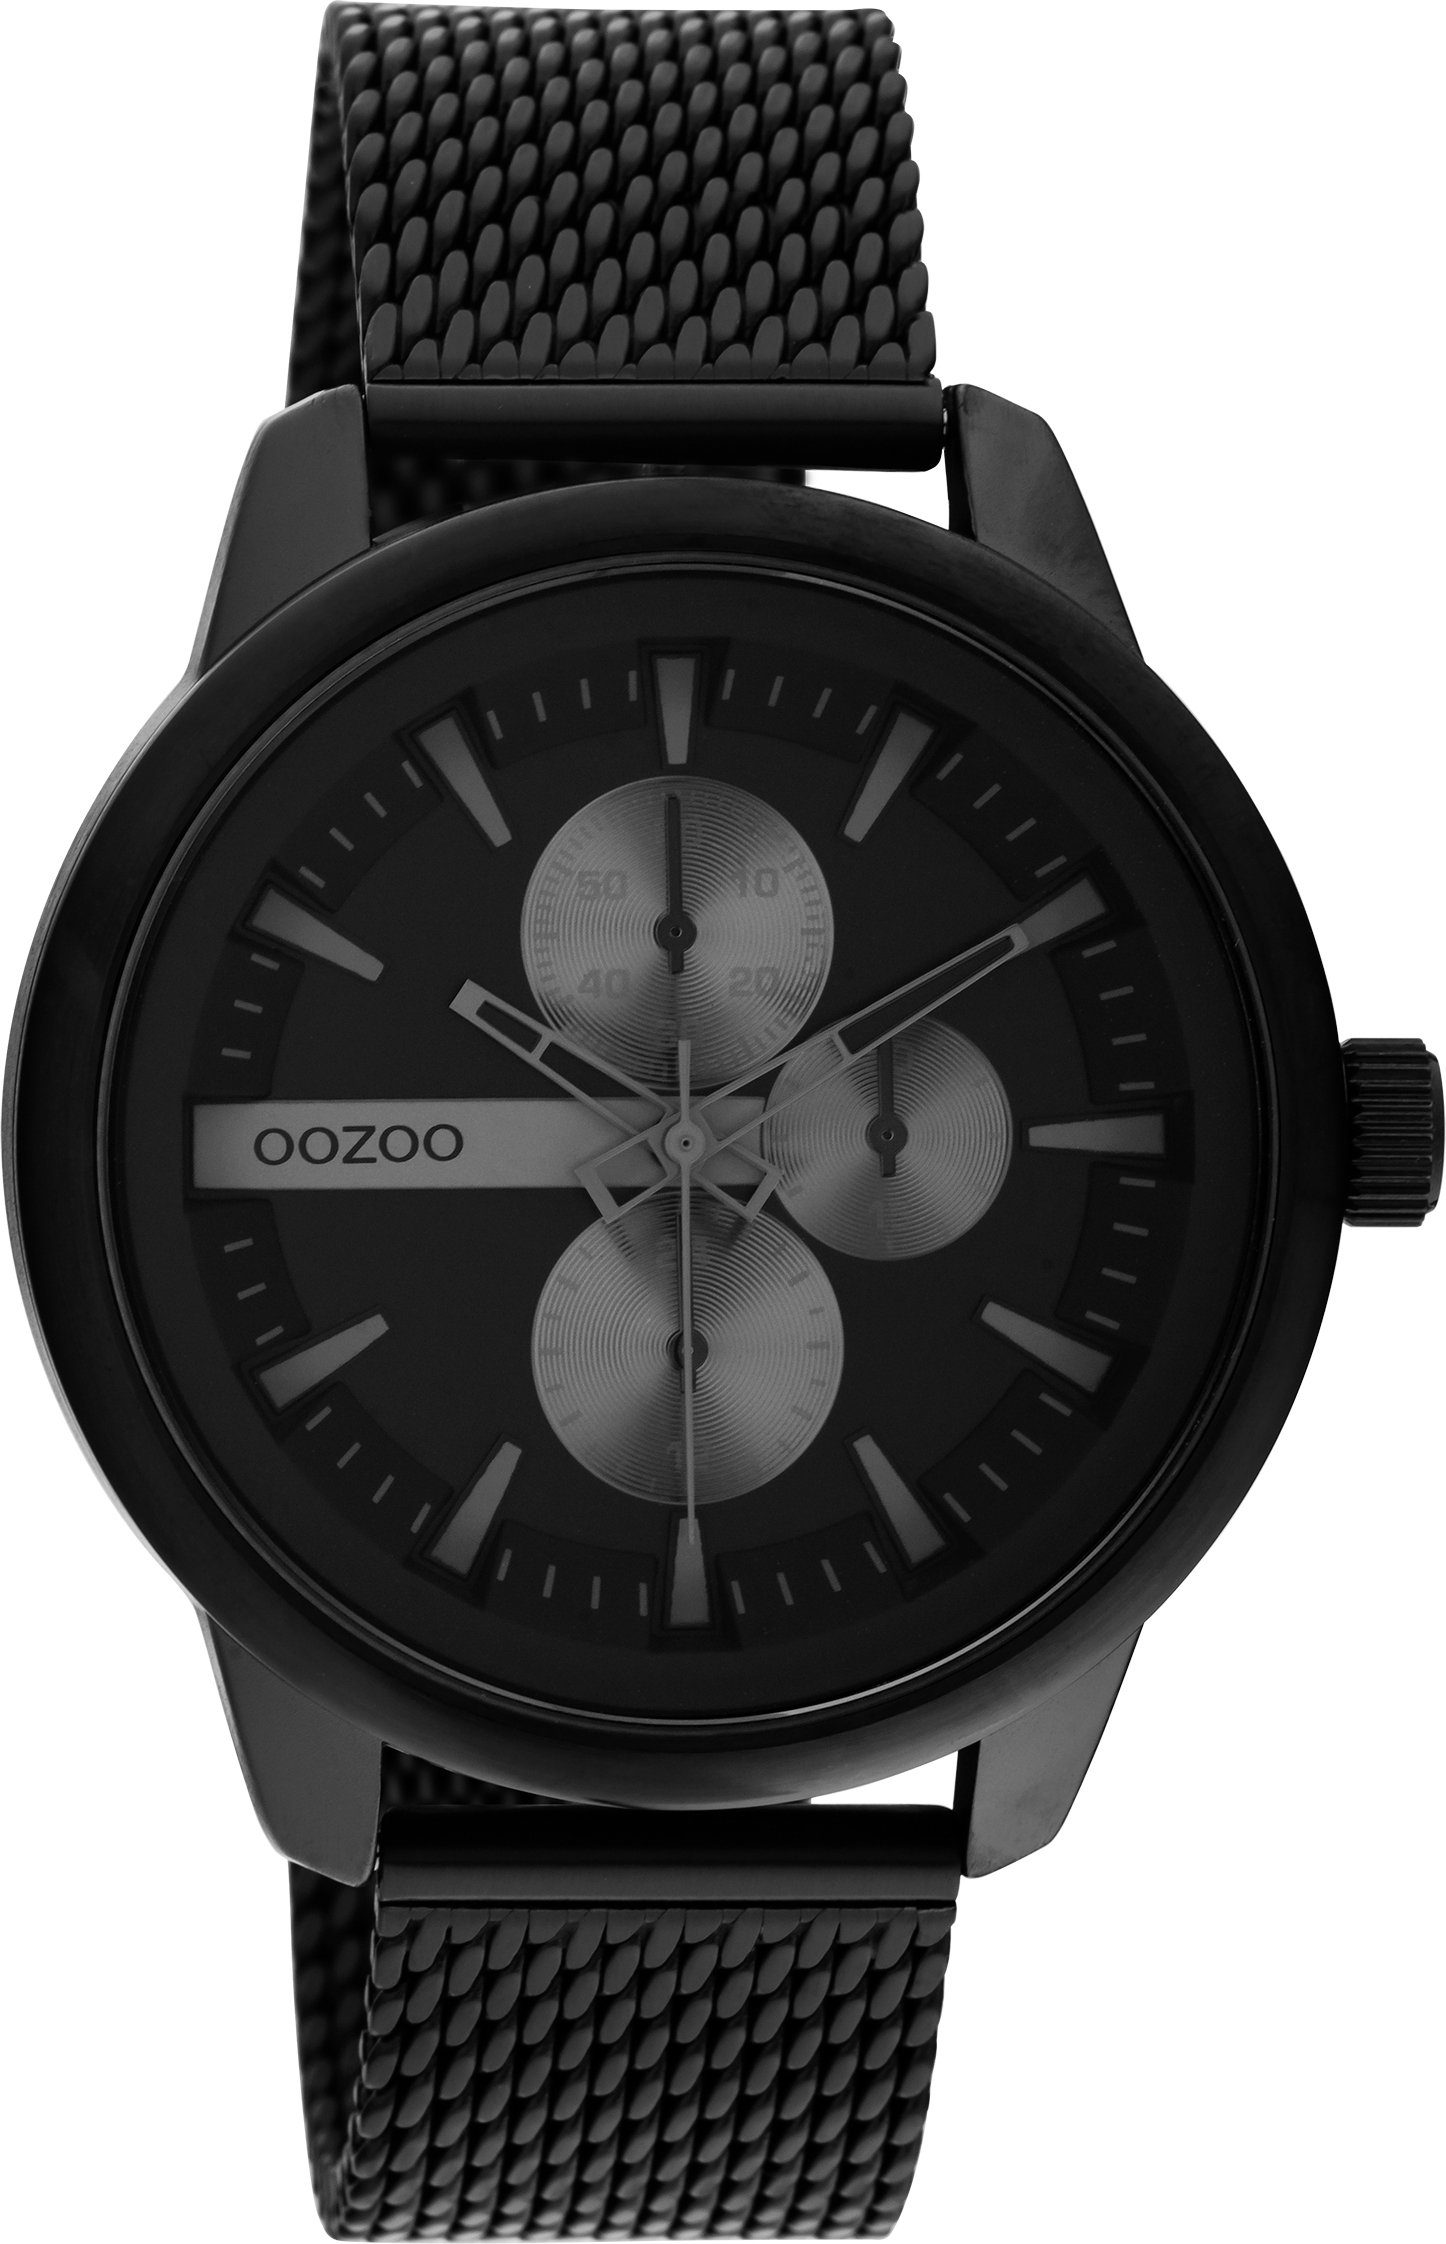 OOZOO Quarzuhr C11019, Metallgehäuse, schwarz IP-beschichtet, Ø ca. 45 mm